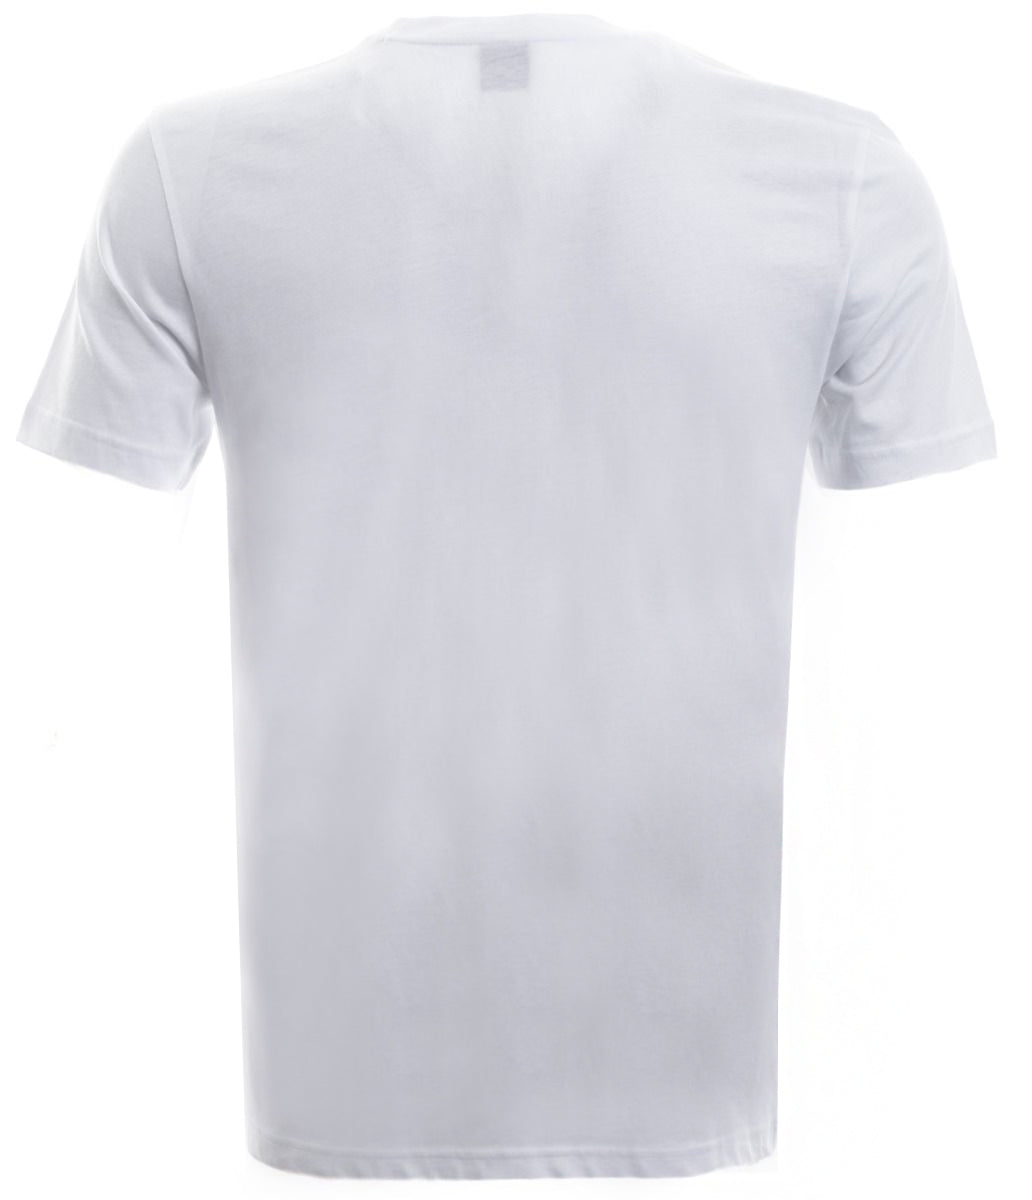 BOSS Tee 3 T Shirt in White Back